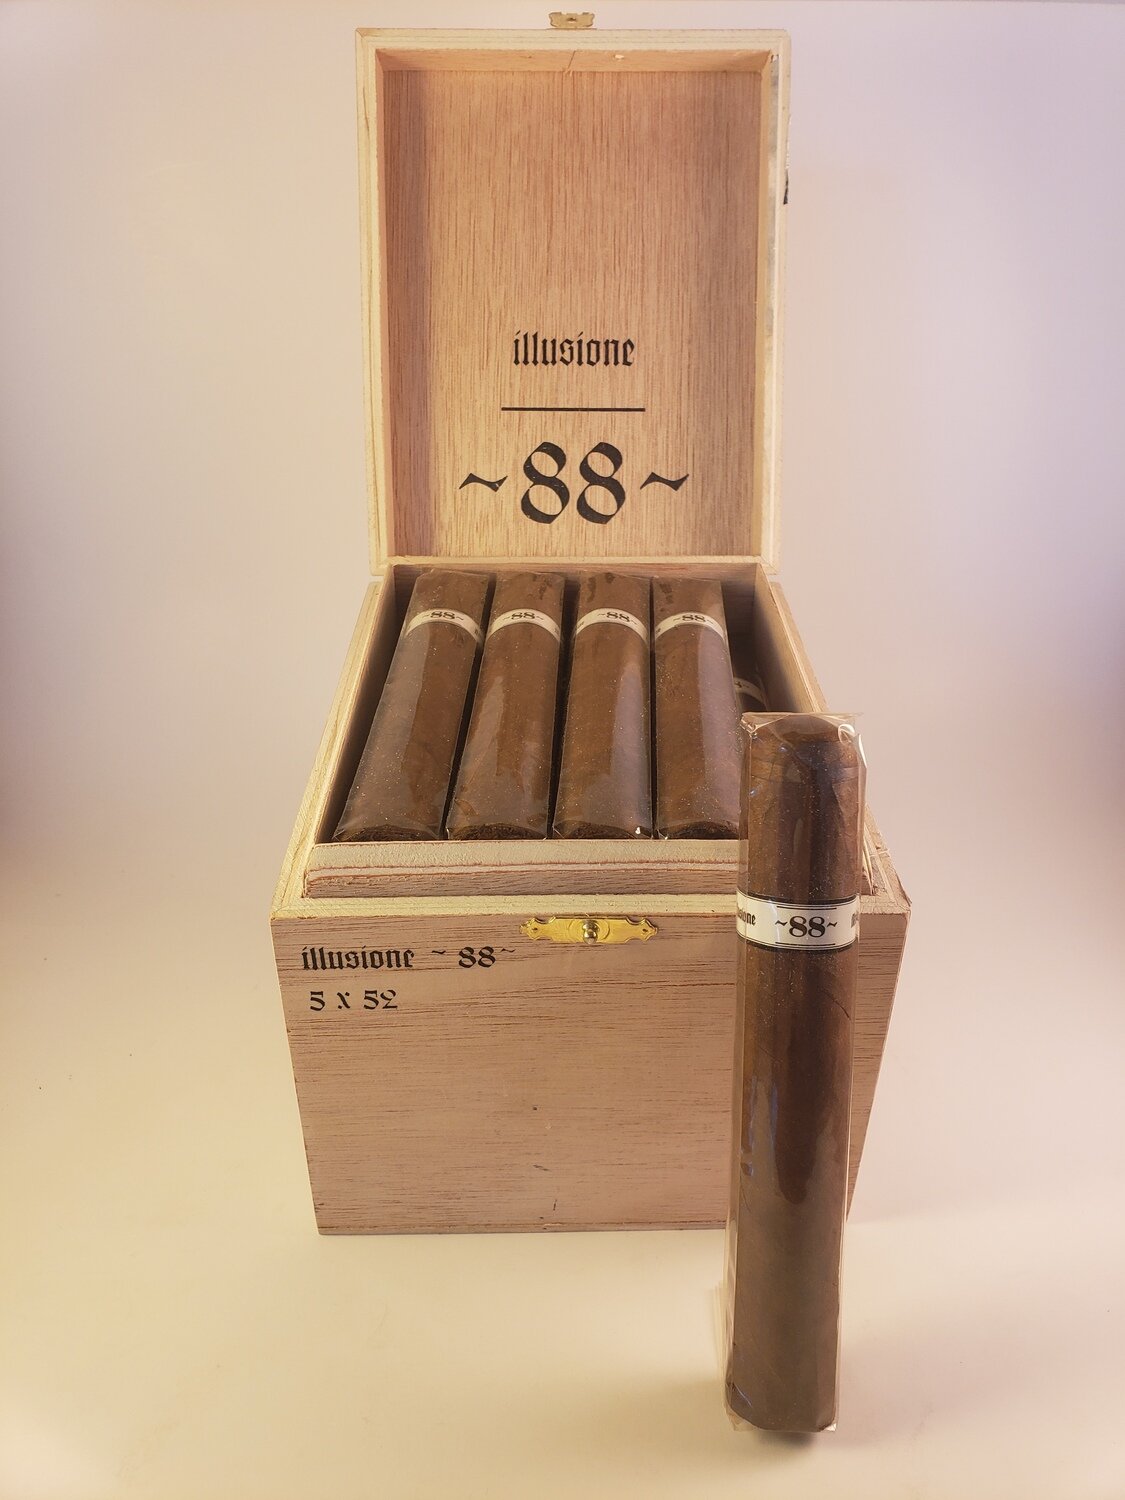 Illusione Original Documents Corojo 2 Belicoso 5 1/4 x 52 Single Cigar